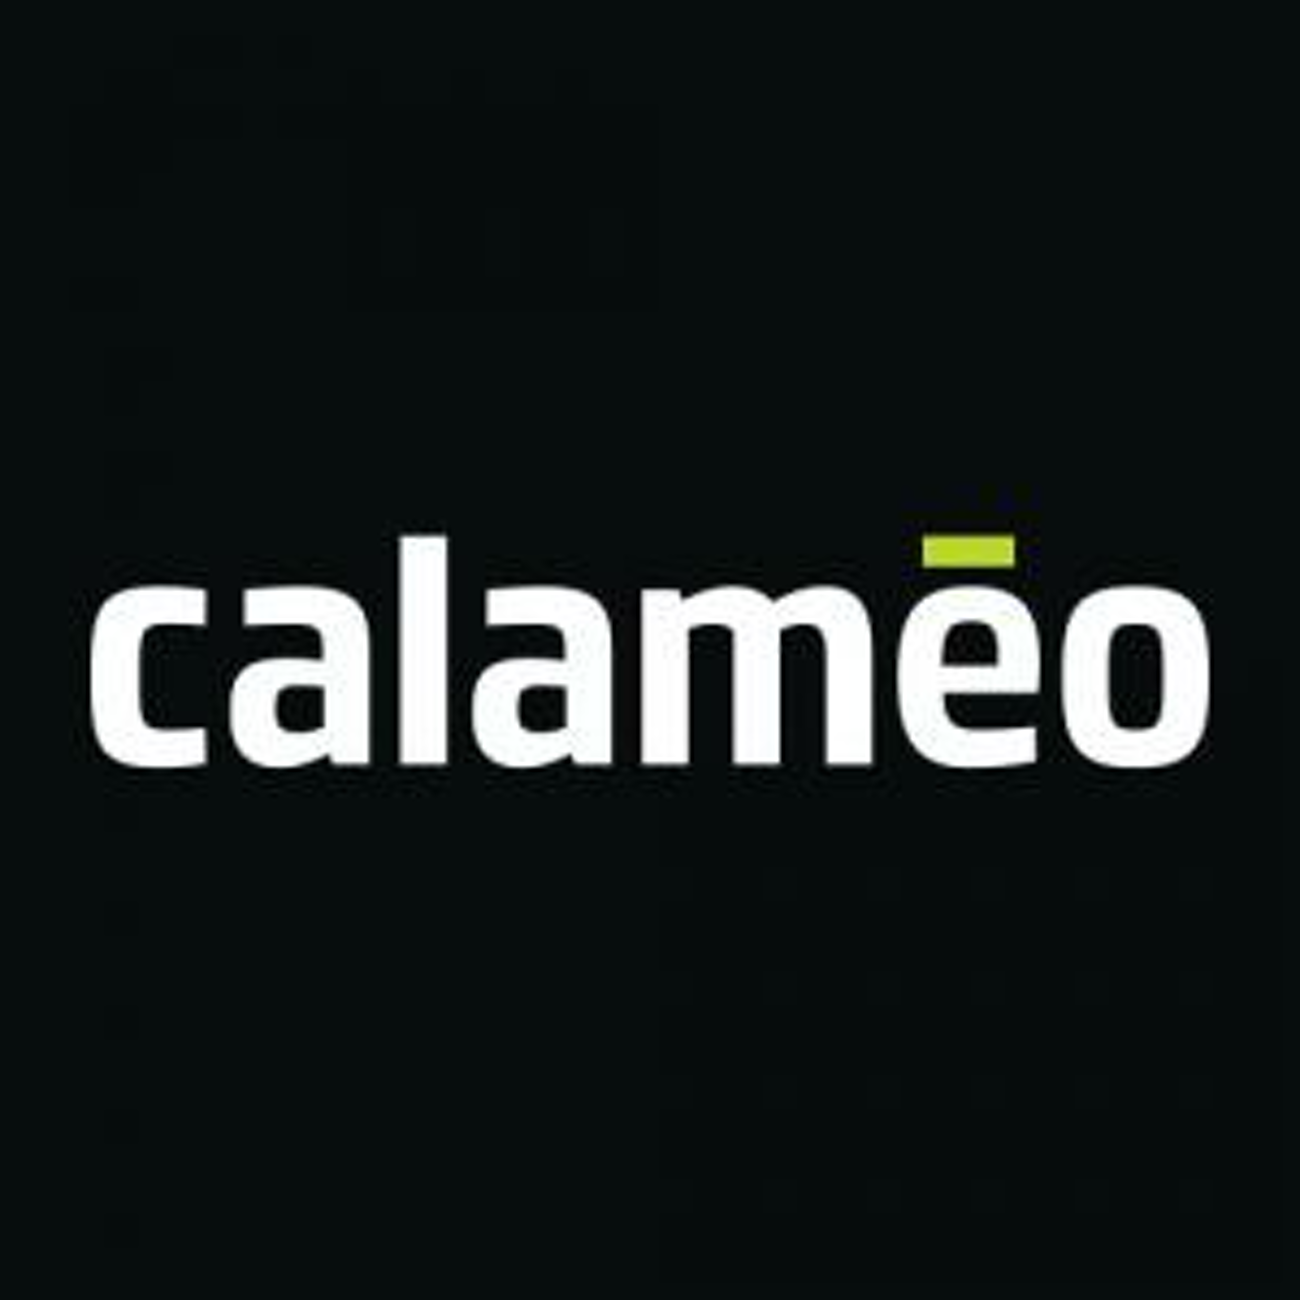 Calameo Giugno 2020 Edizione Straordinaria (041)